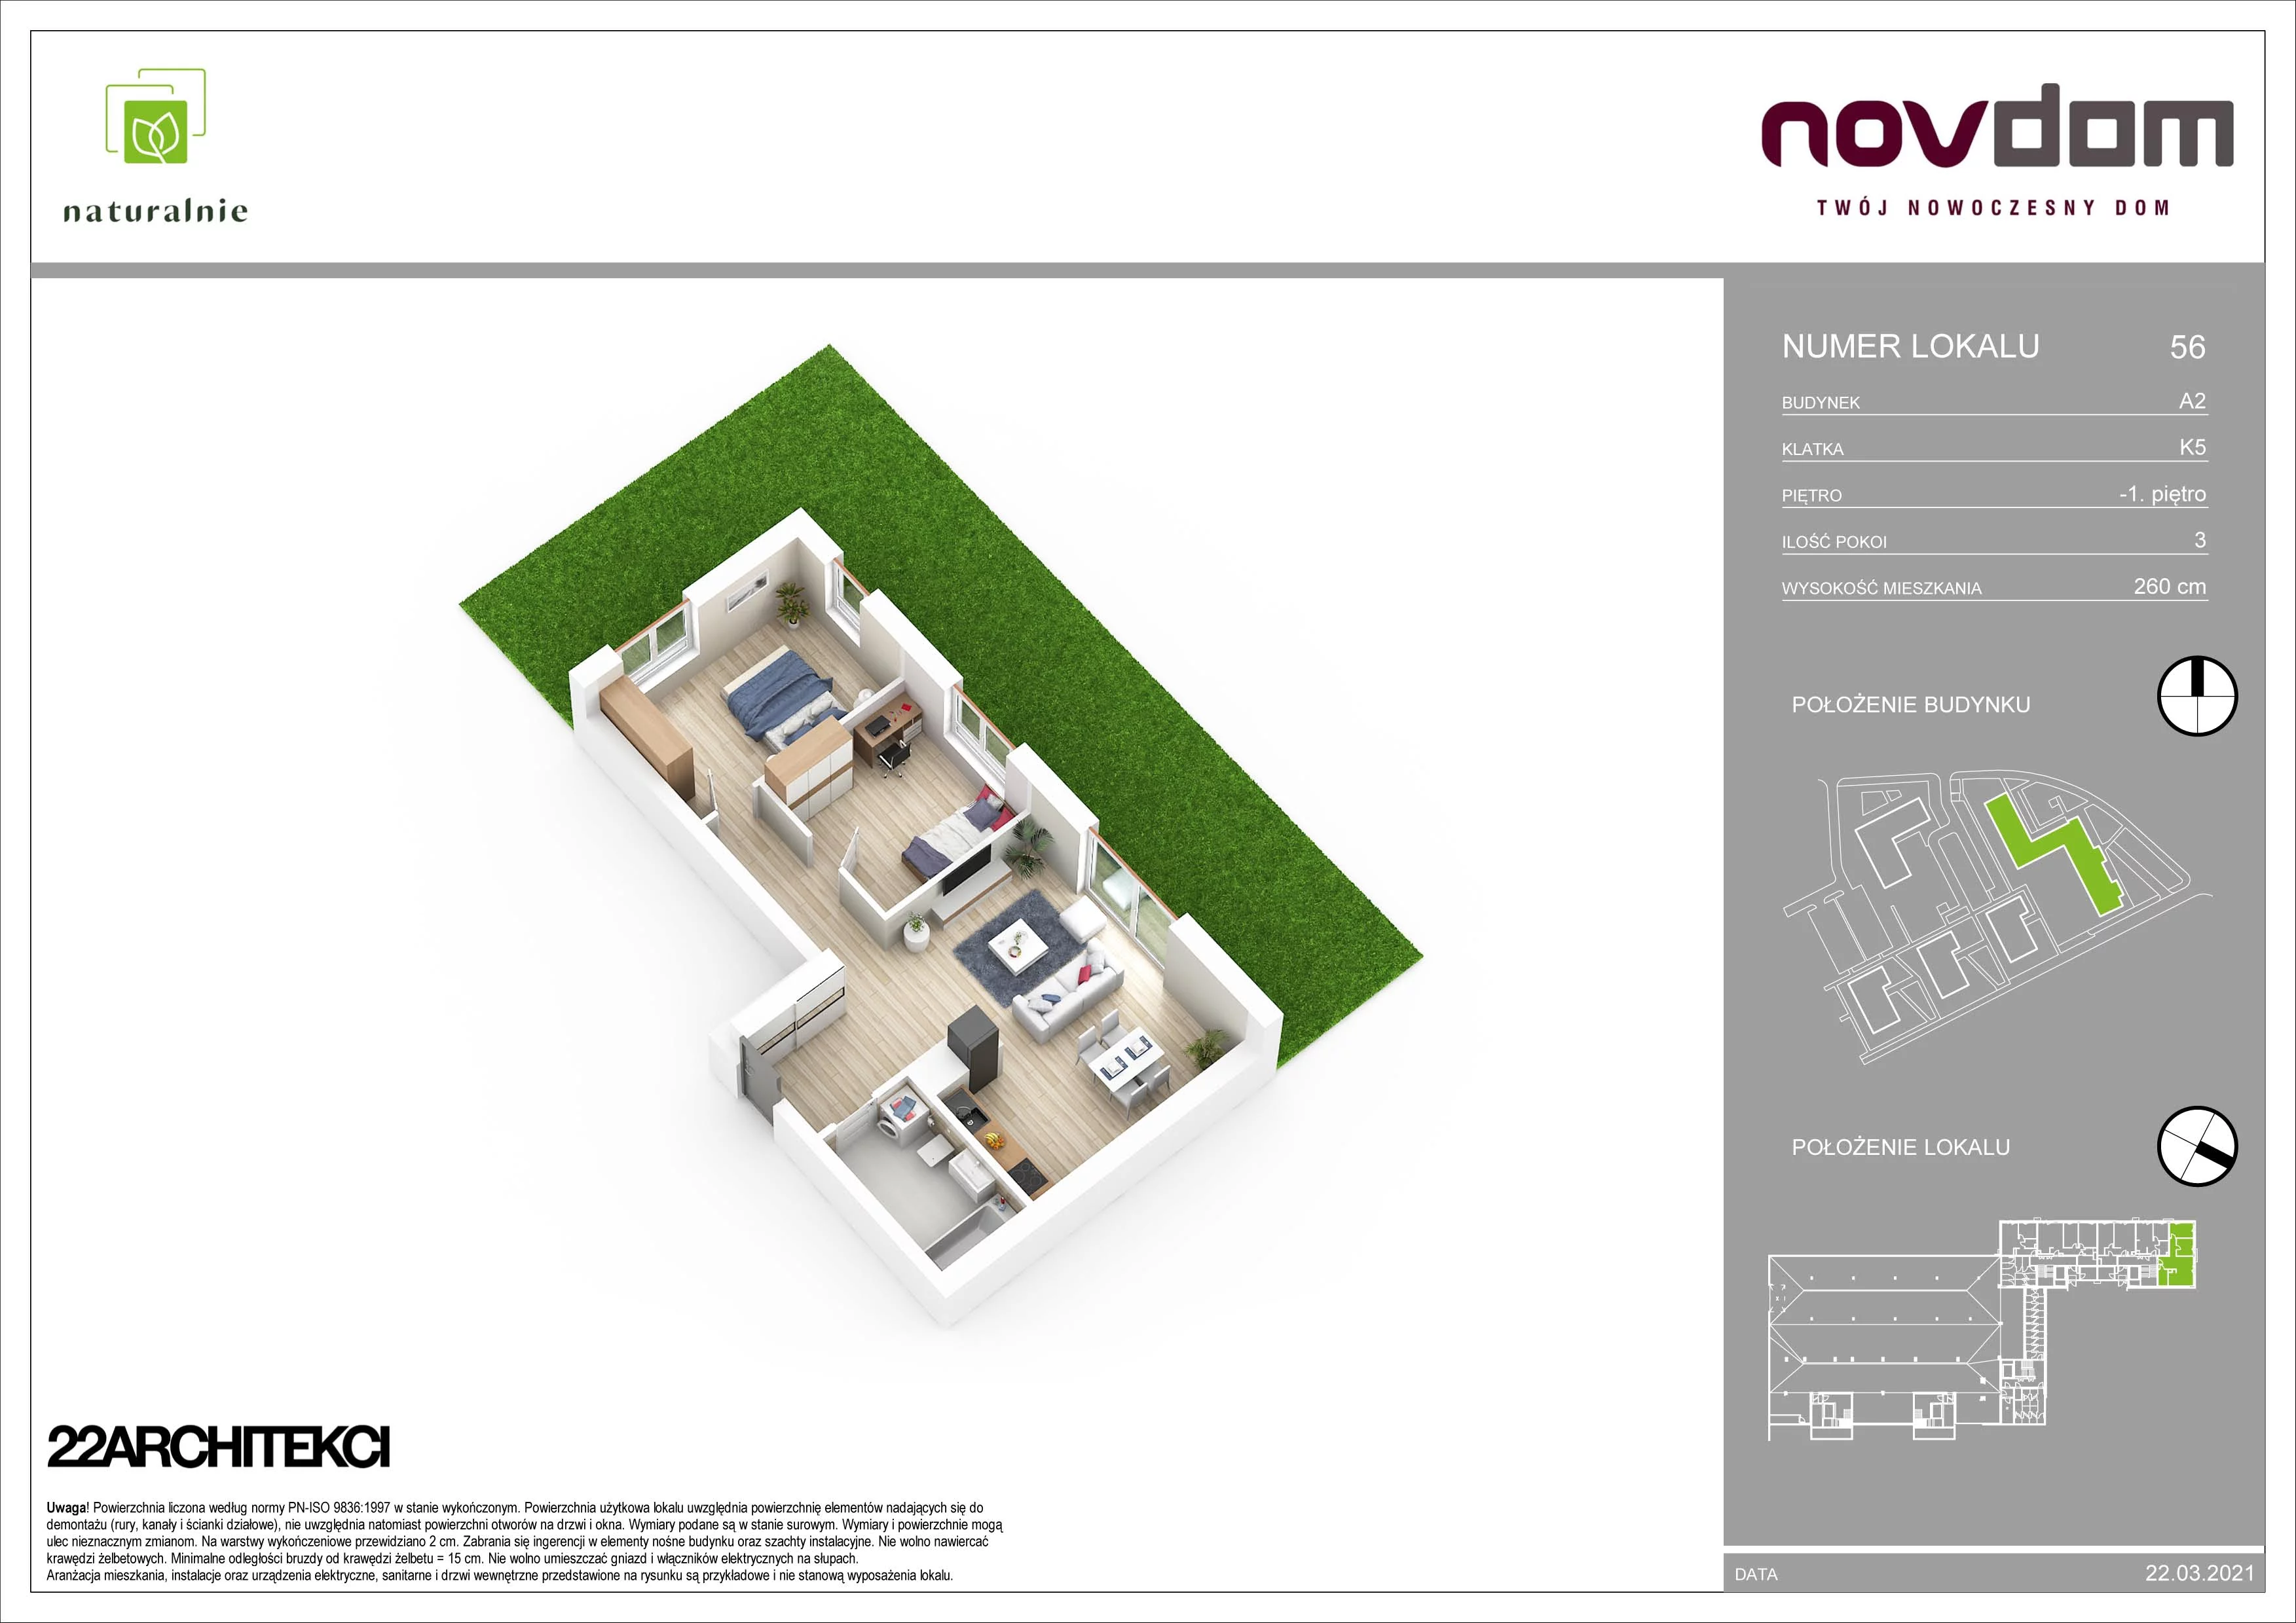 Apartament 68,03 m², parter, oferta nr A2/56, Osiedle Naturalnie, Mława, ul. Nowowiejskiego